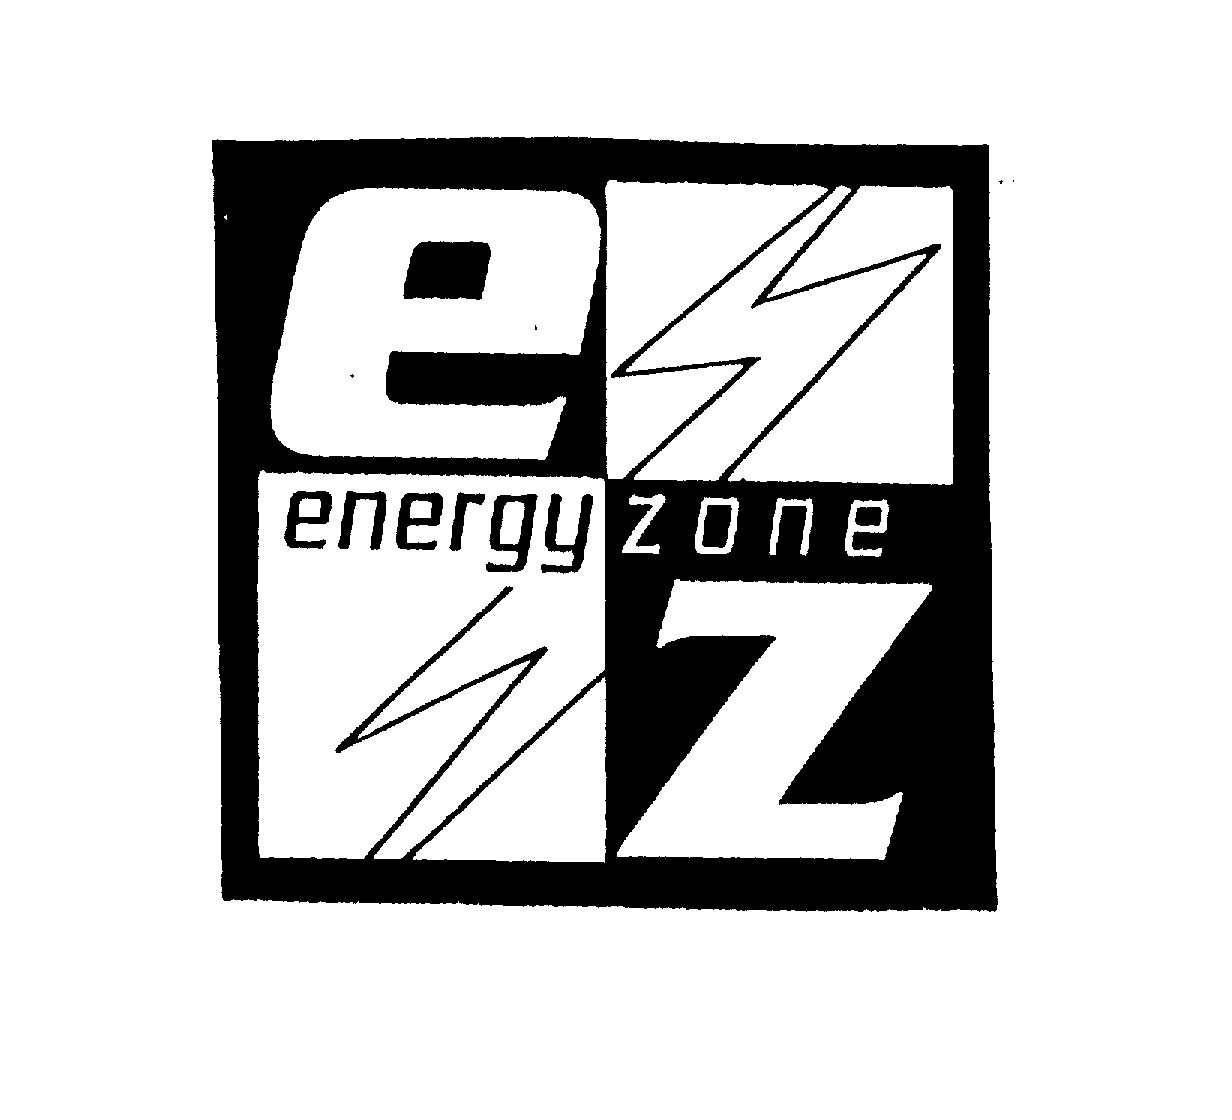 ENERGY ZONE